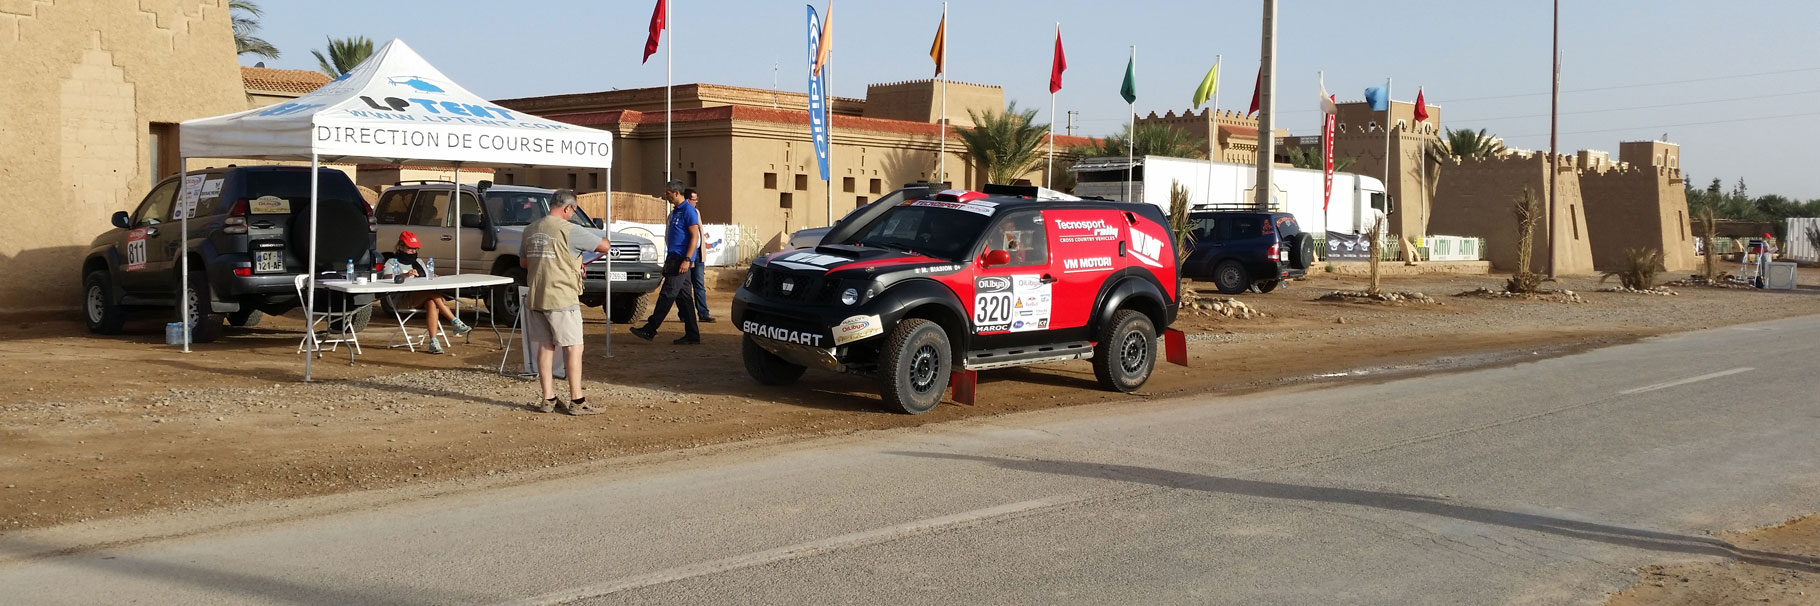 Alcune informazioni su di me | Alberto Berti Rally Raid Fia Co Driver World Cup for Cross Country Rallies Vm Motori Spa Q8 Oils ExtremeTech Tecnosport